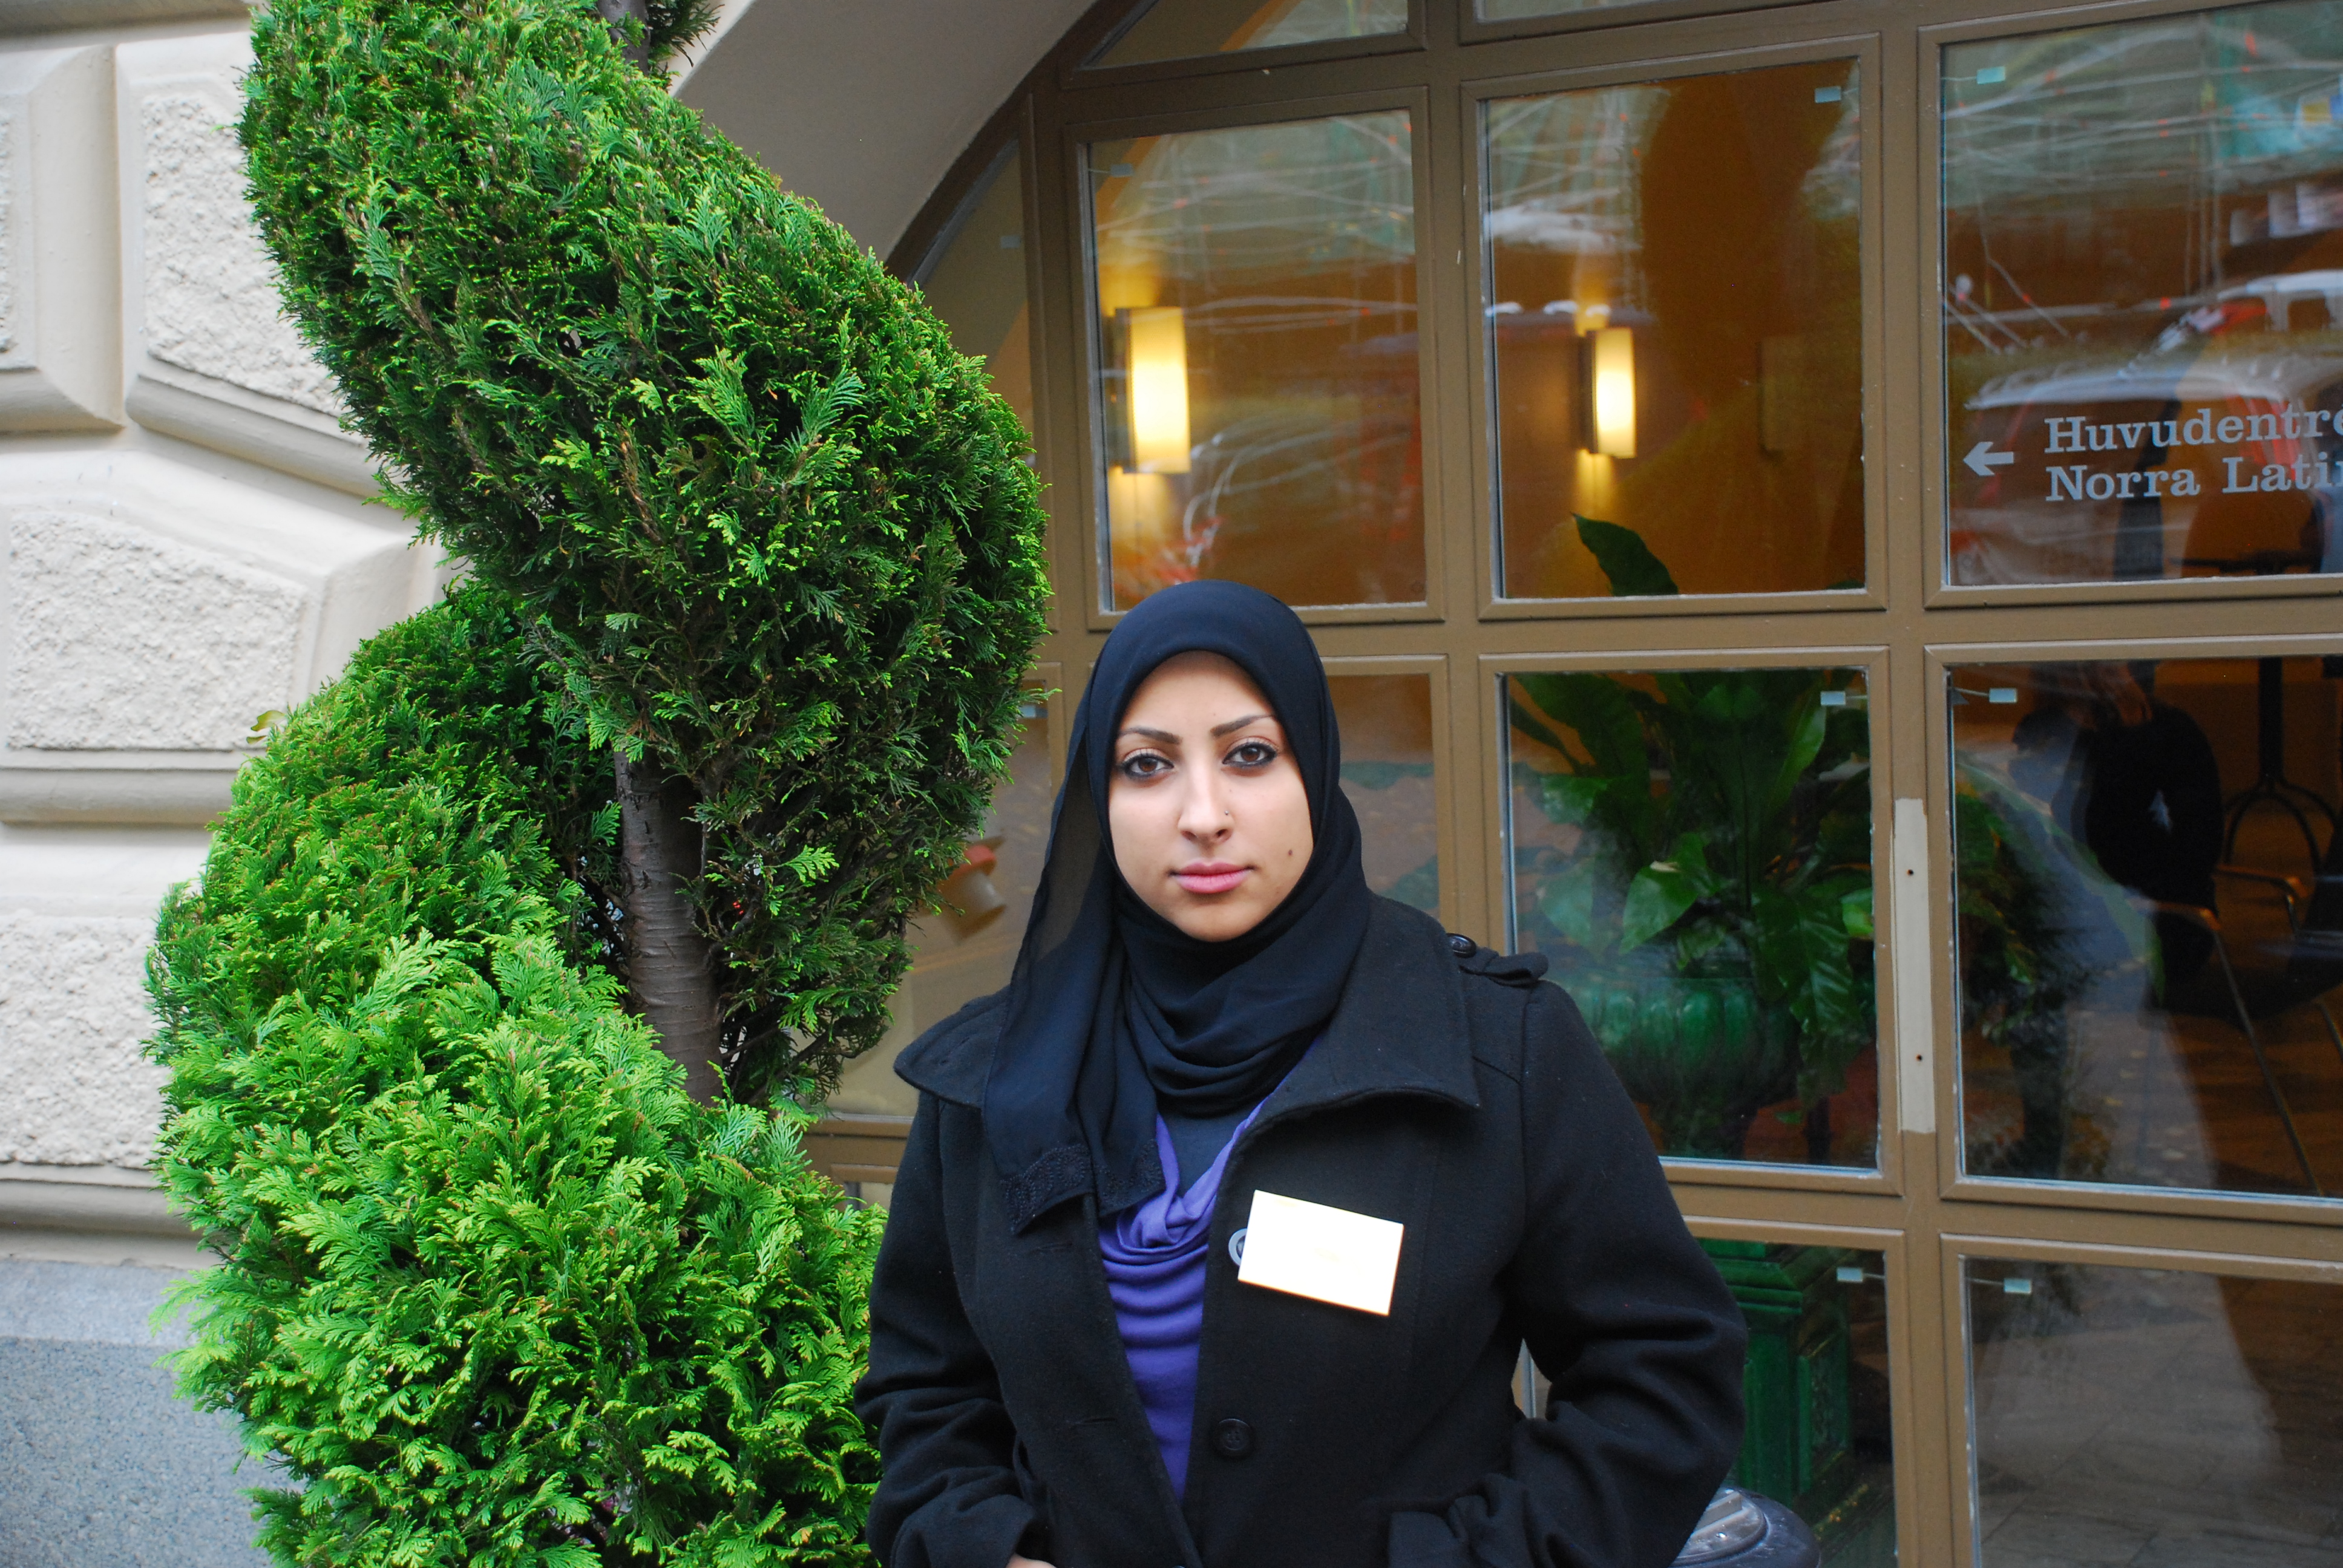 Hans dotter Maryam al-Khawaja är aktiv i BCHR och åker omkring i världen för att upplysa om deras kamp för mänskliga rättigheter. Här är hon under ett besök i Sverige om den arabiska våren och sociala medier.